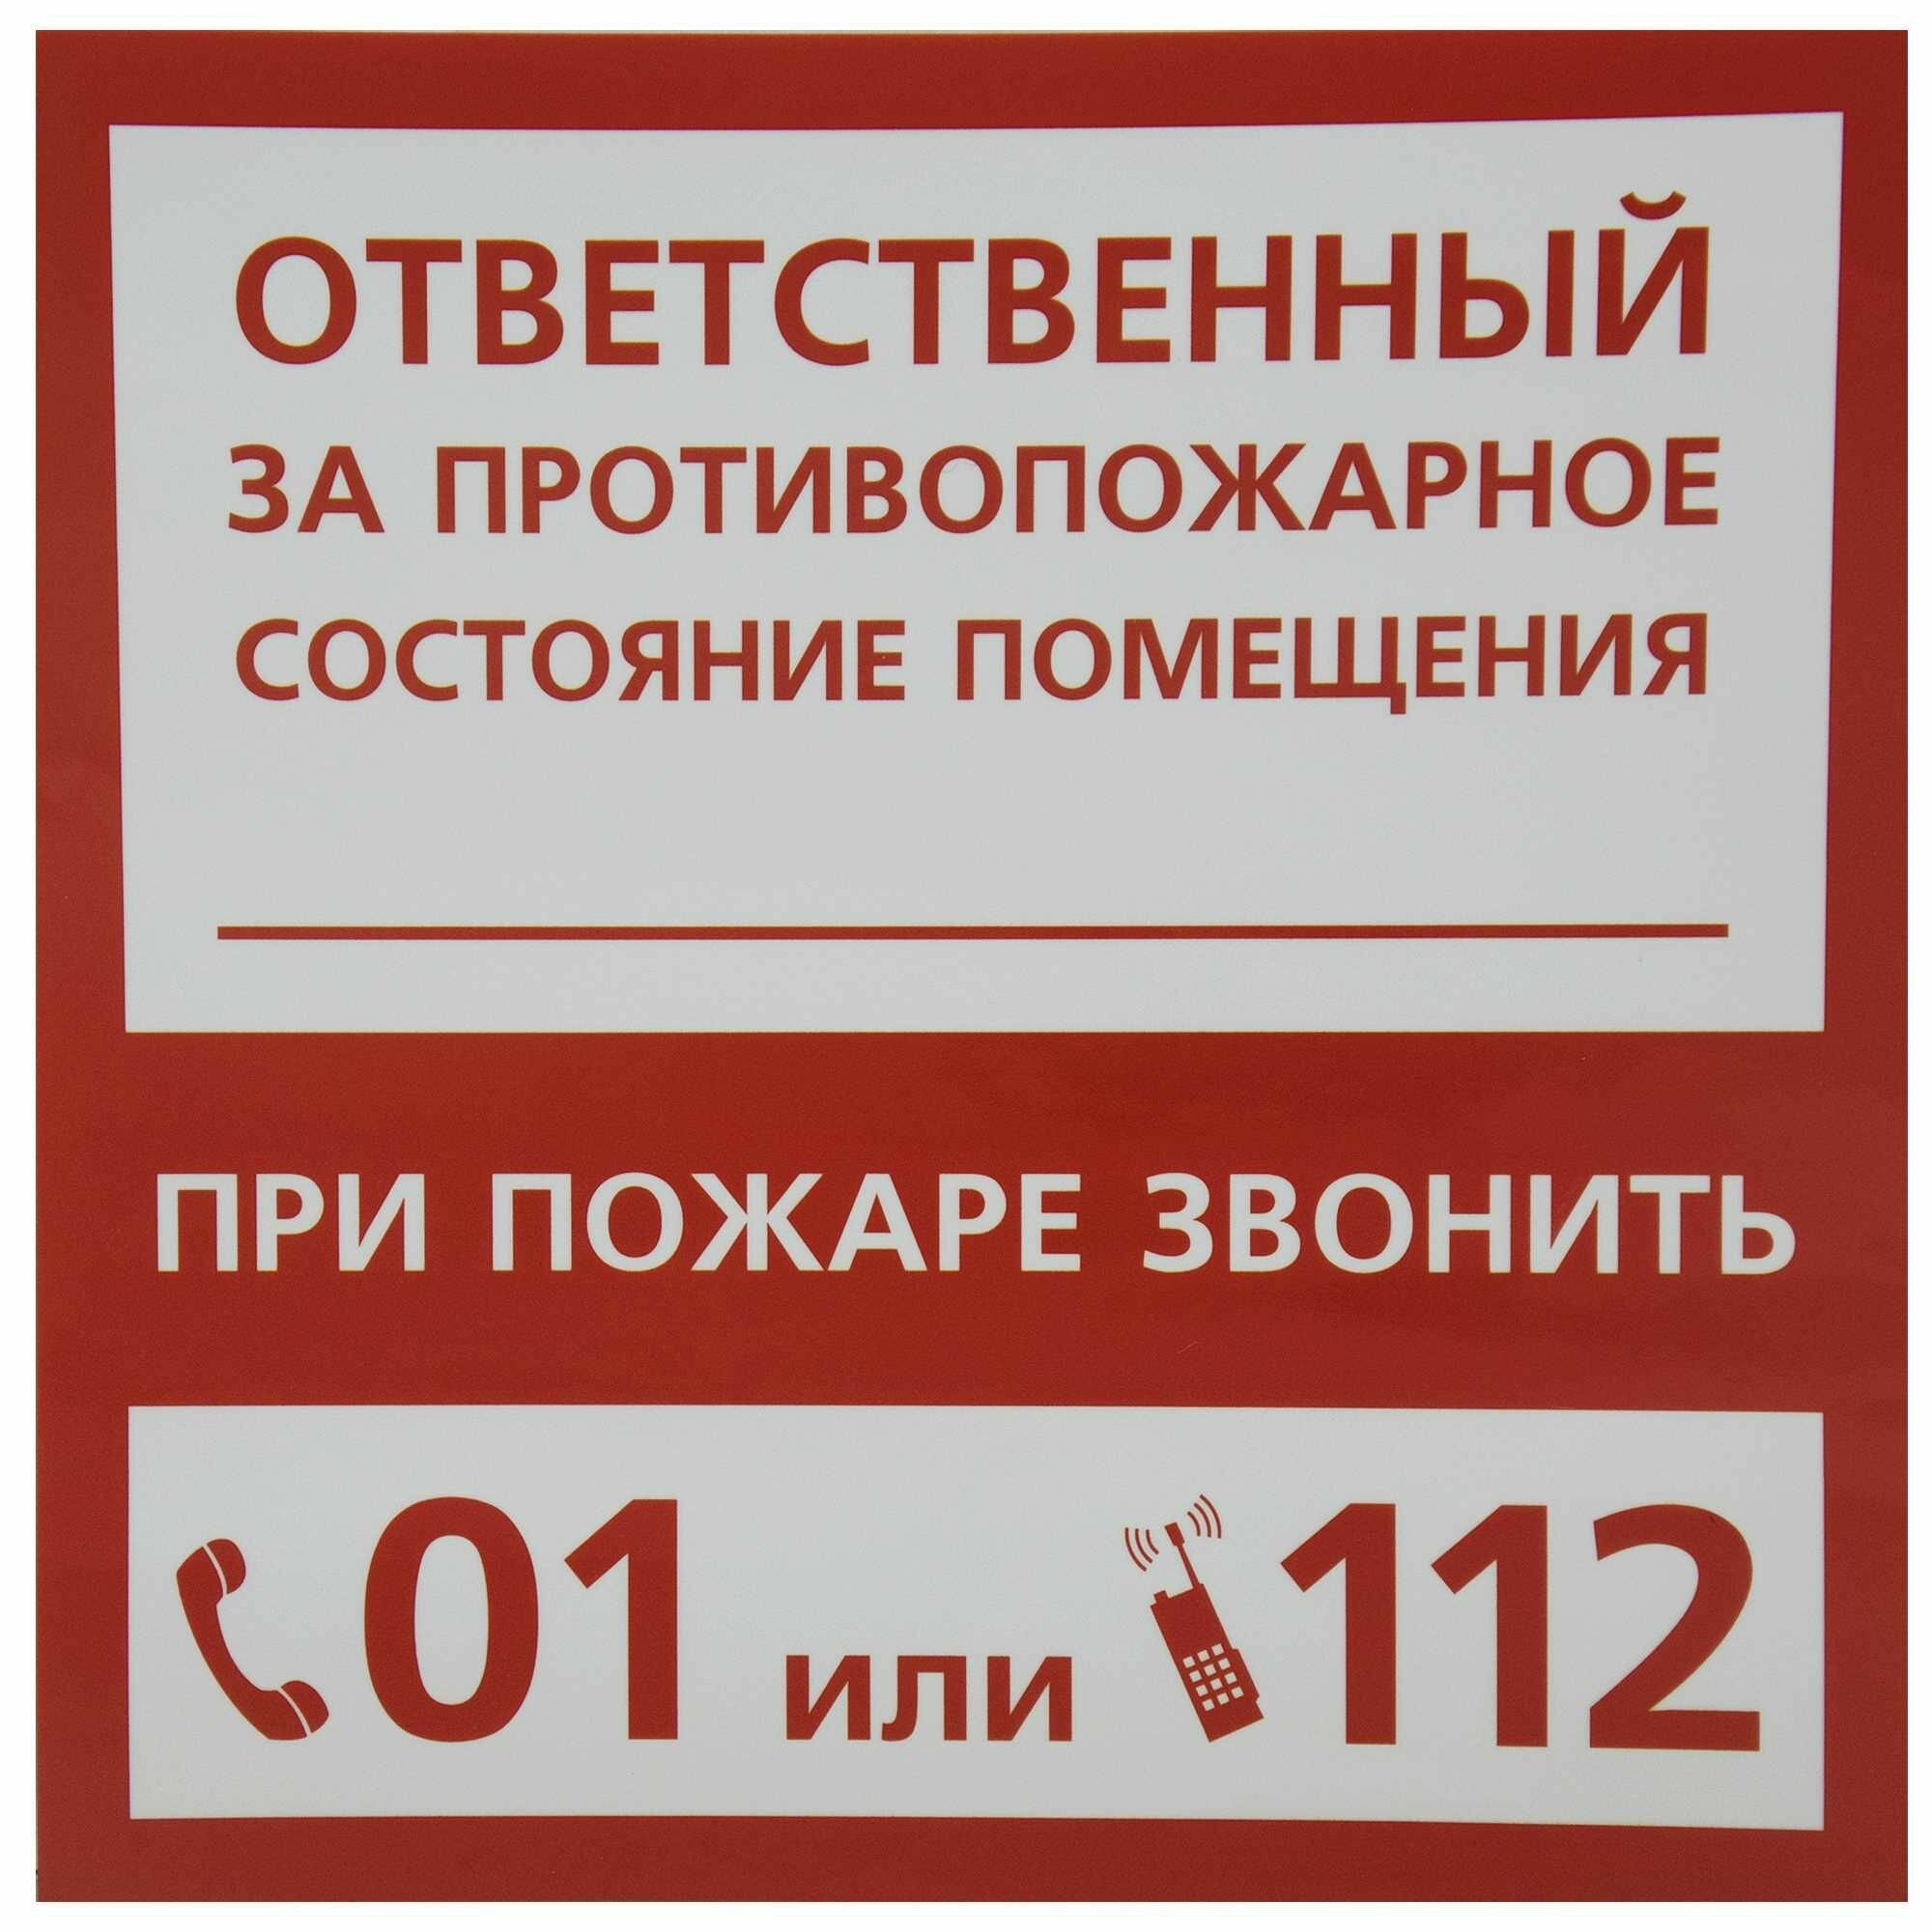 Наклейка "Ответственный за пожарную безопасность"